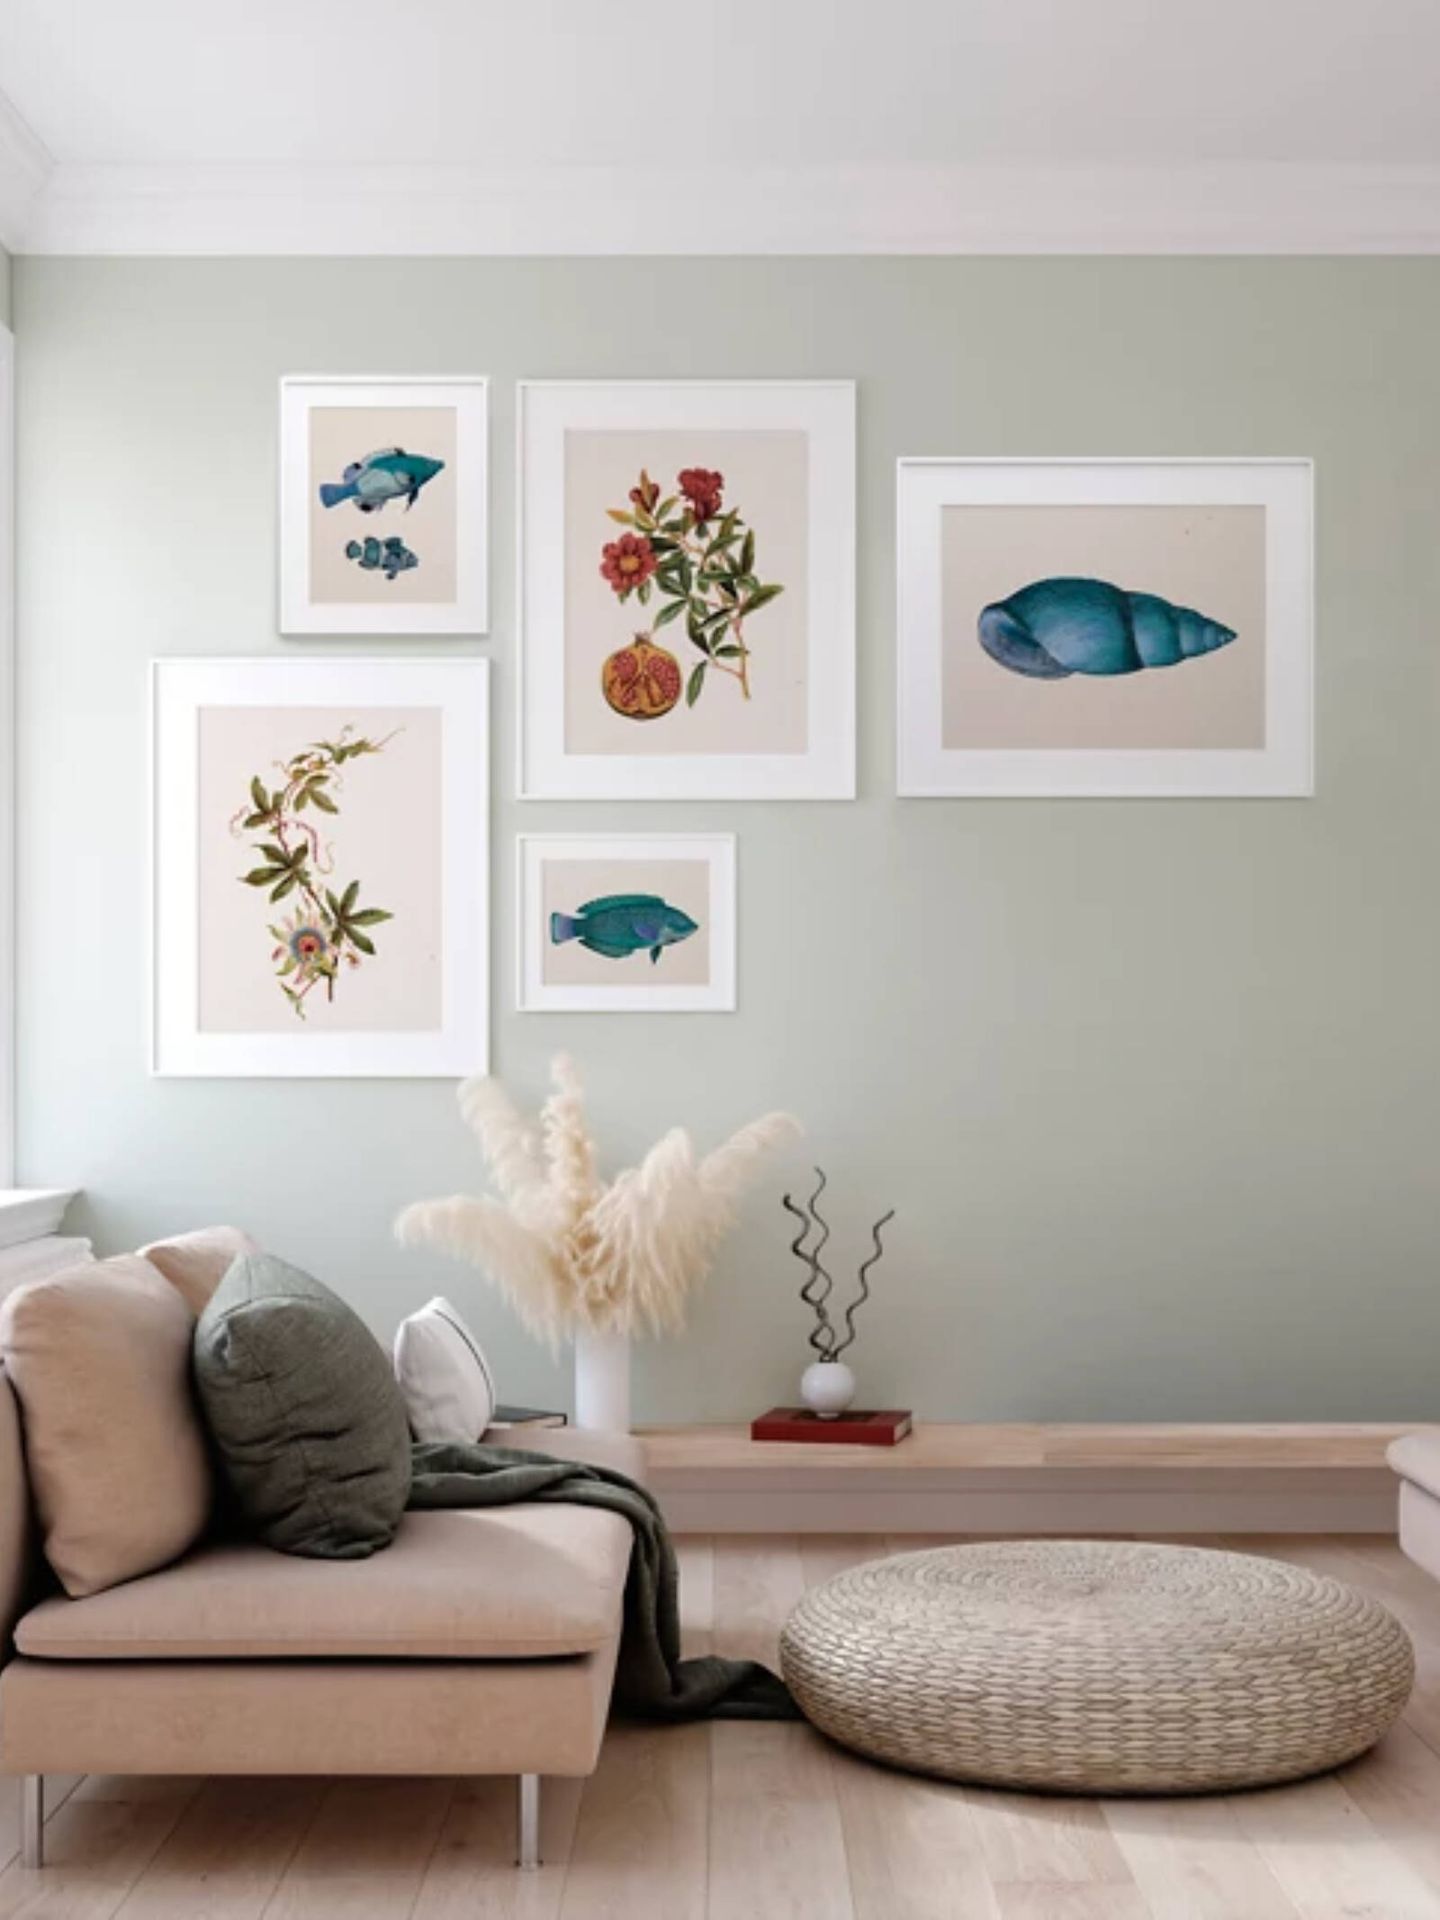 15 láminas decorativas bonitas y baratas para decorar tu casa